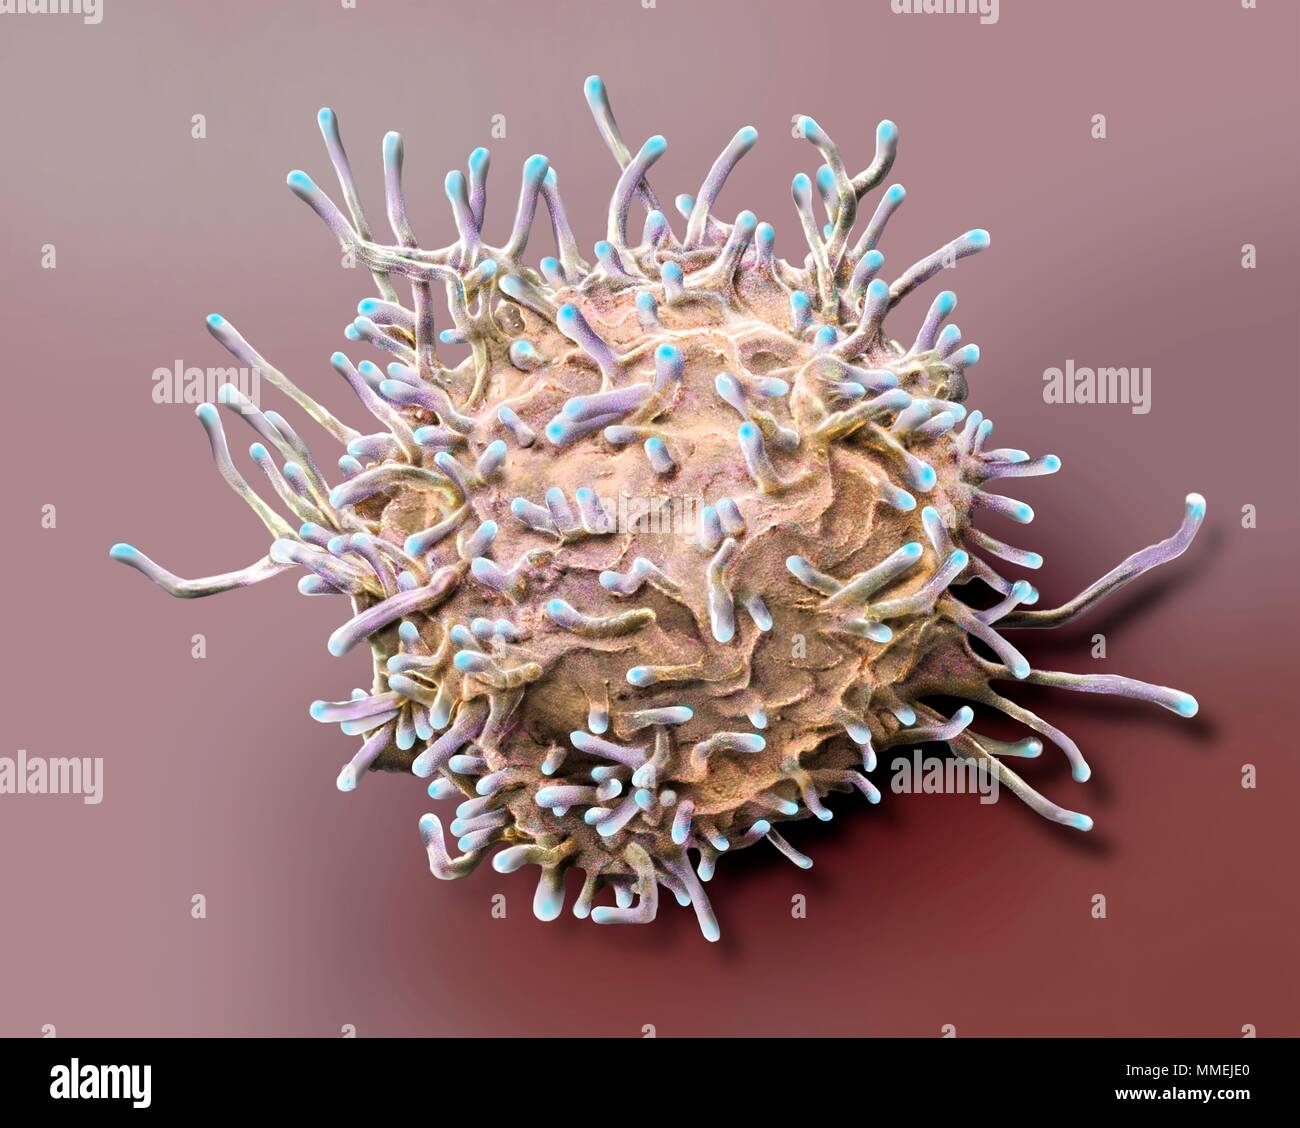 Des lymphocytes T activés. Couleur de l'analyse des électrons Microphotographie (SEM) de l'activation des lymphocytes T à partir d'un échantillon de sang humain. Les lymphocytes T, ou cellules T, Banque D'Images